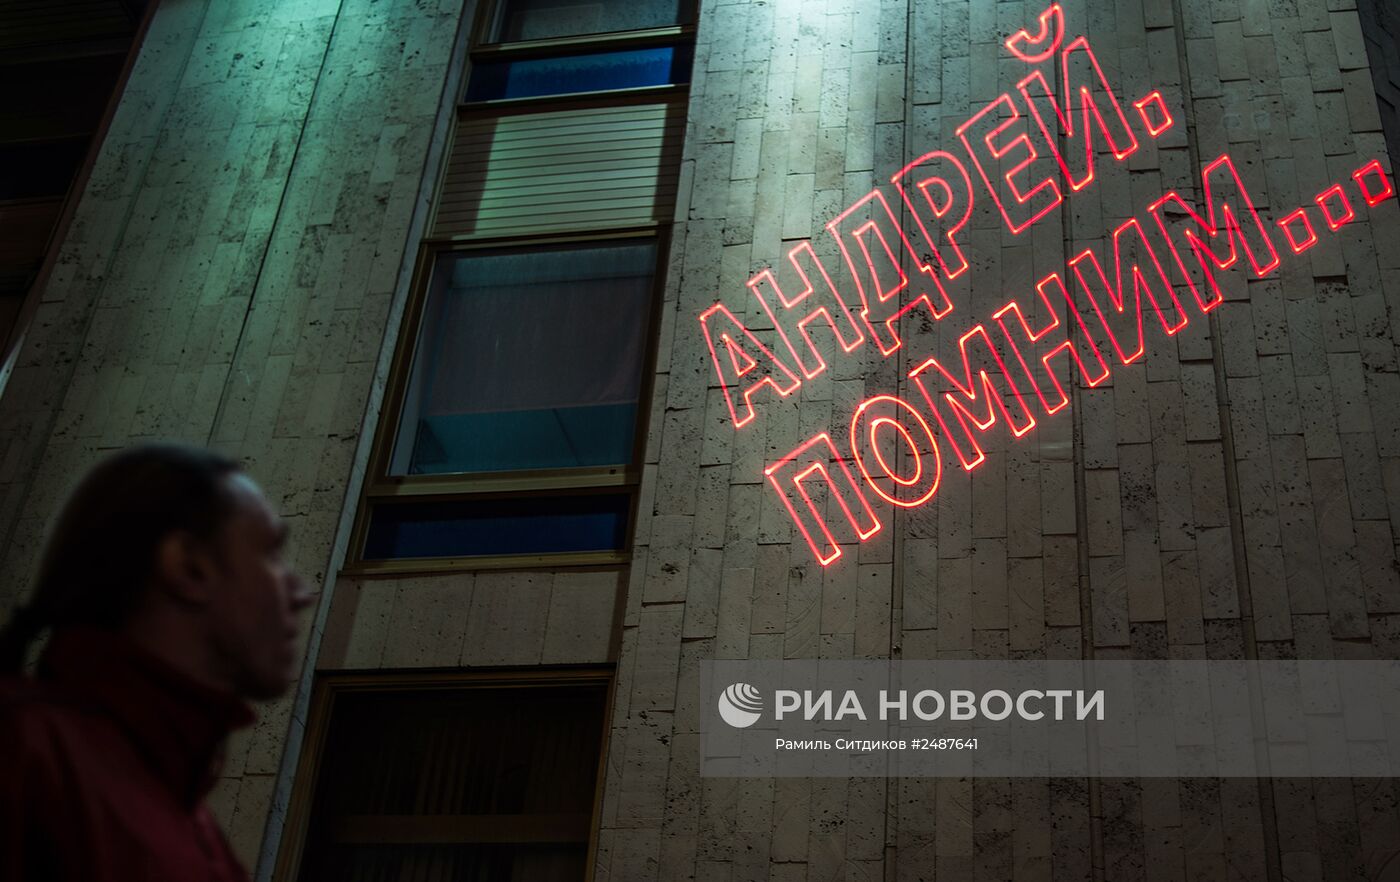 Надпись в память об А.Стенине на здании МИА "Россия Сегодня"